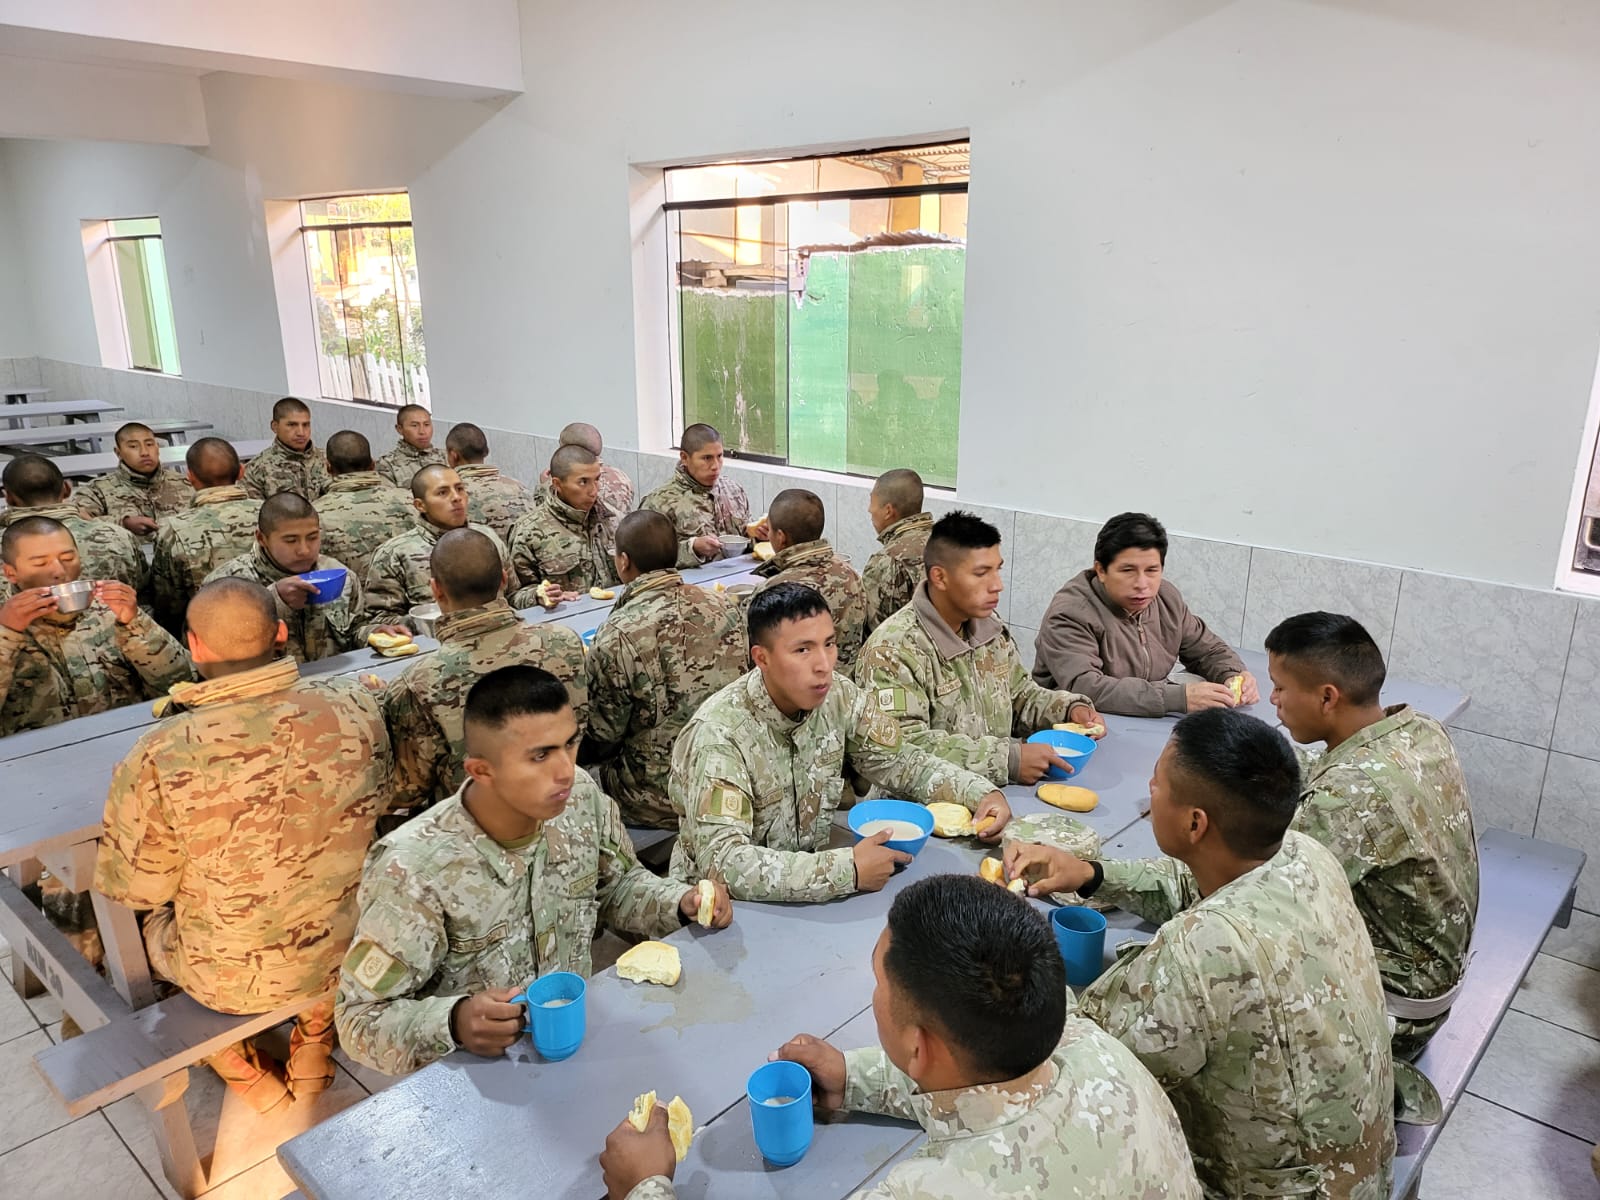 PERÚ: Presidente Castillo recorrió cuartel Agustín Gamarra en Cusco y compartió desayuno con las tropas